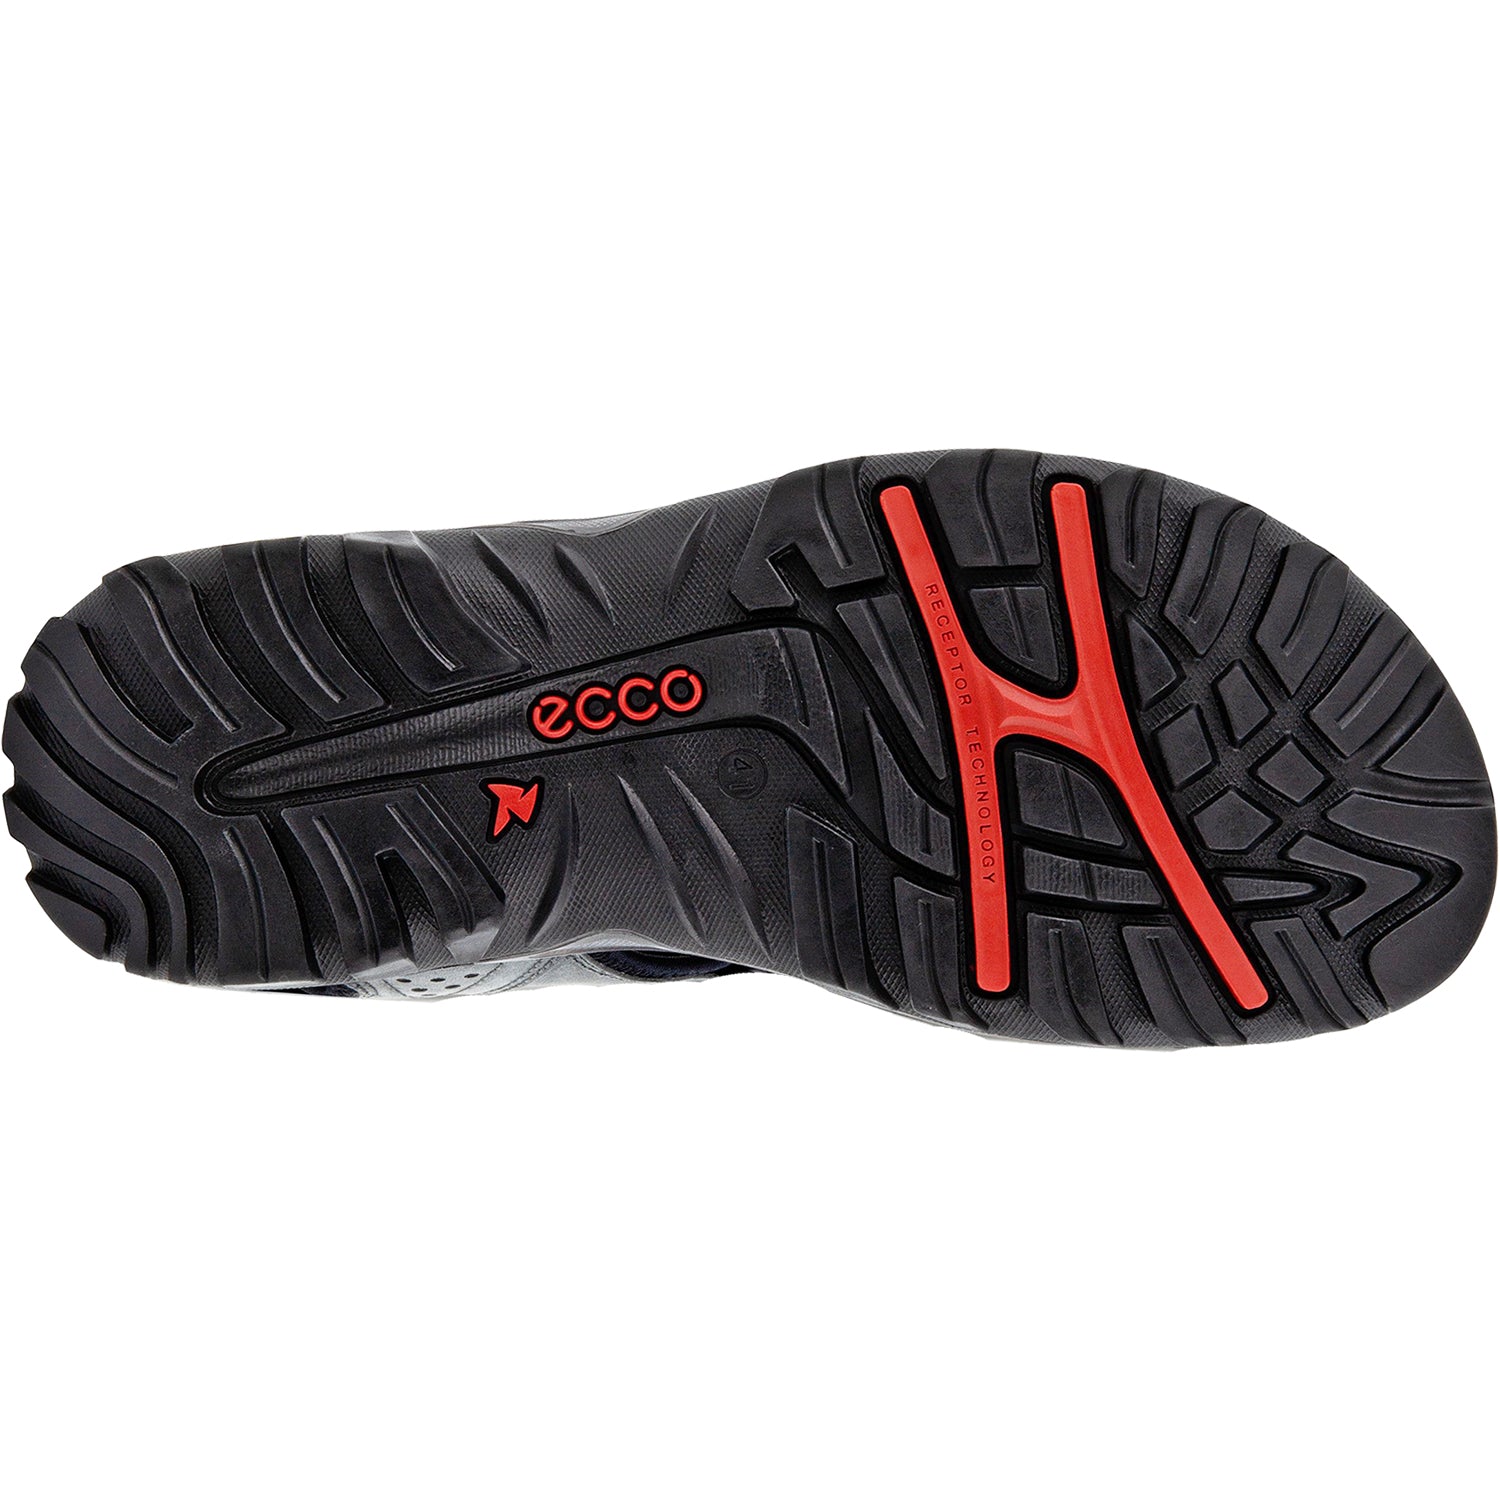 Ecco Yucatan Lite Magnet | Men's Outdoor Sandals | Footwear etc.